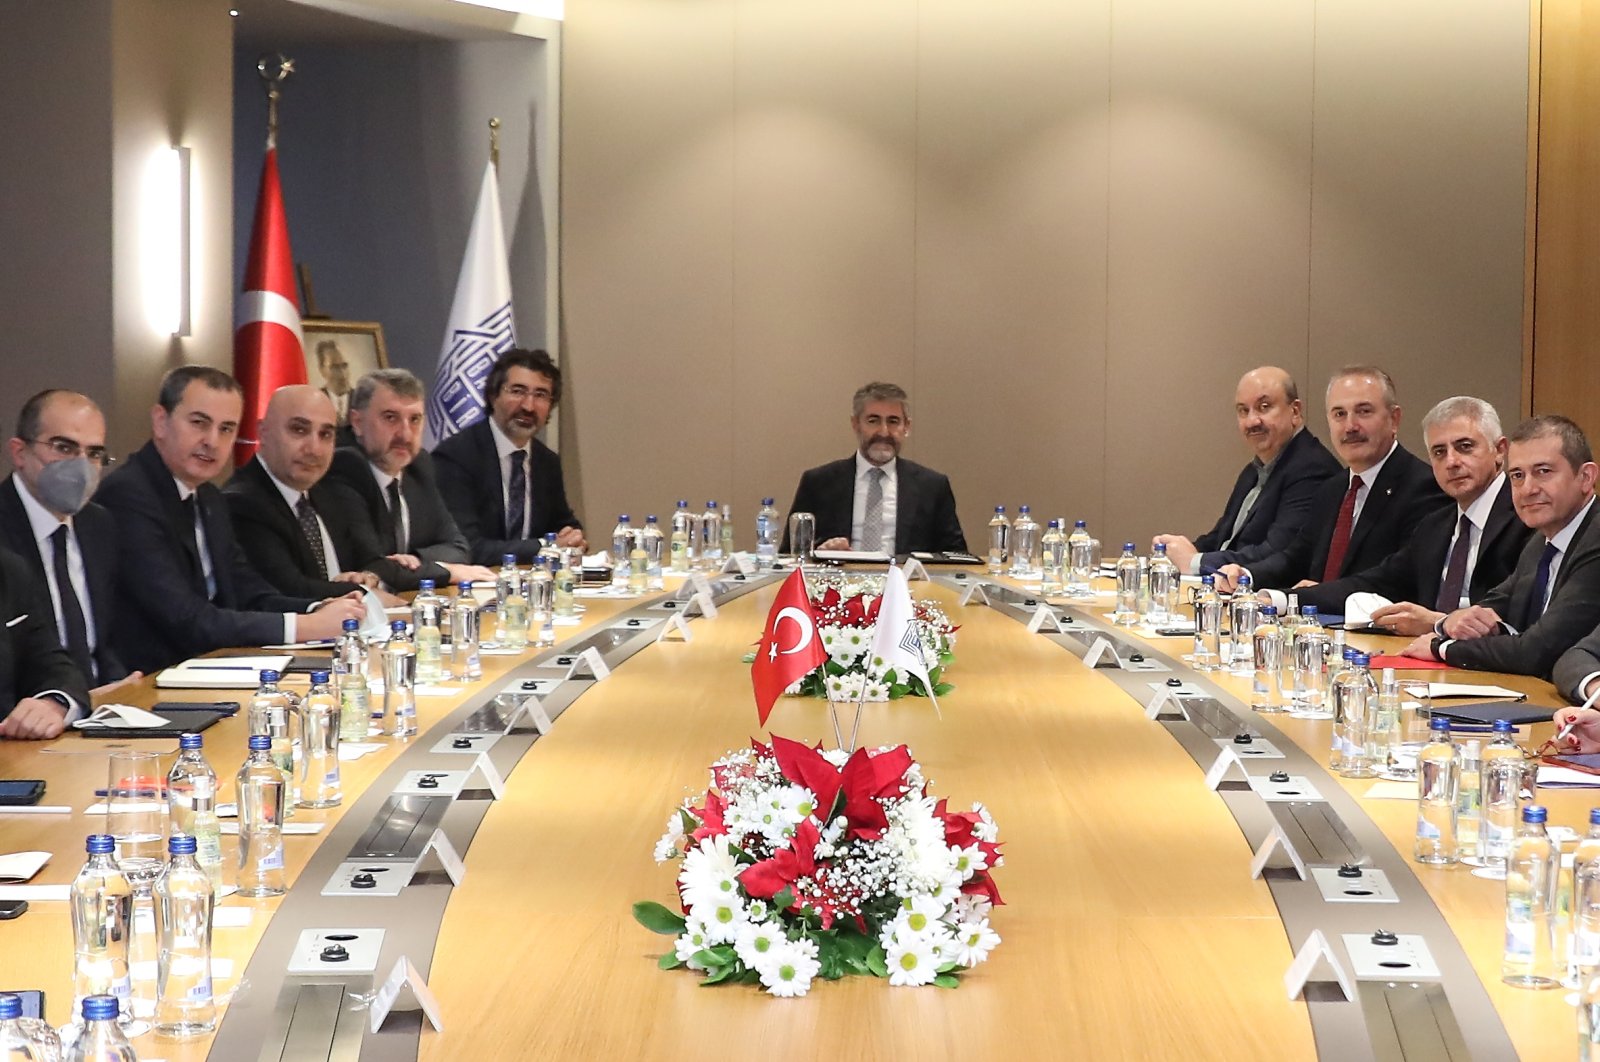 Finmin memberi pengarahan kepada asosiasi bank tentang model ekonomi baru Turki